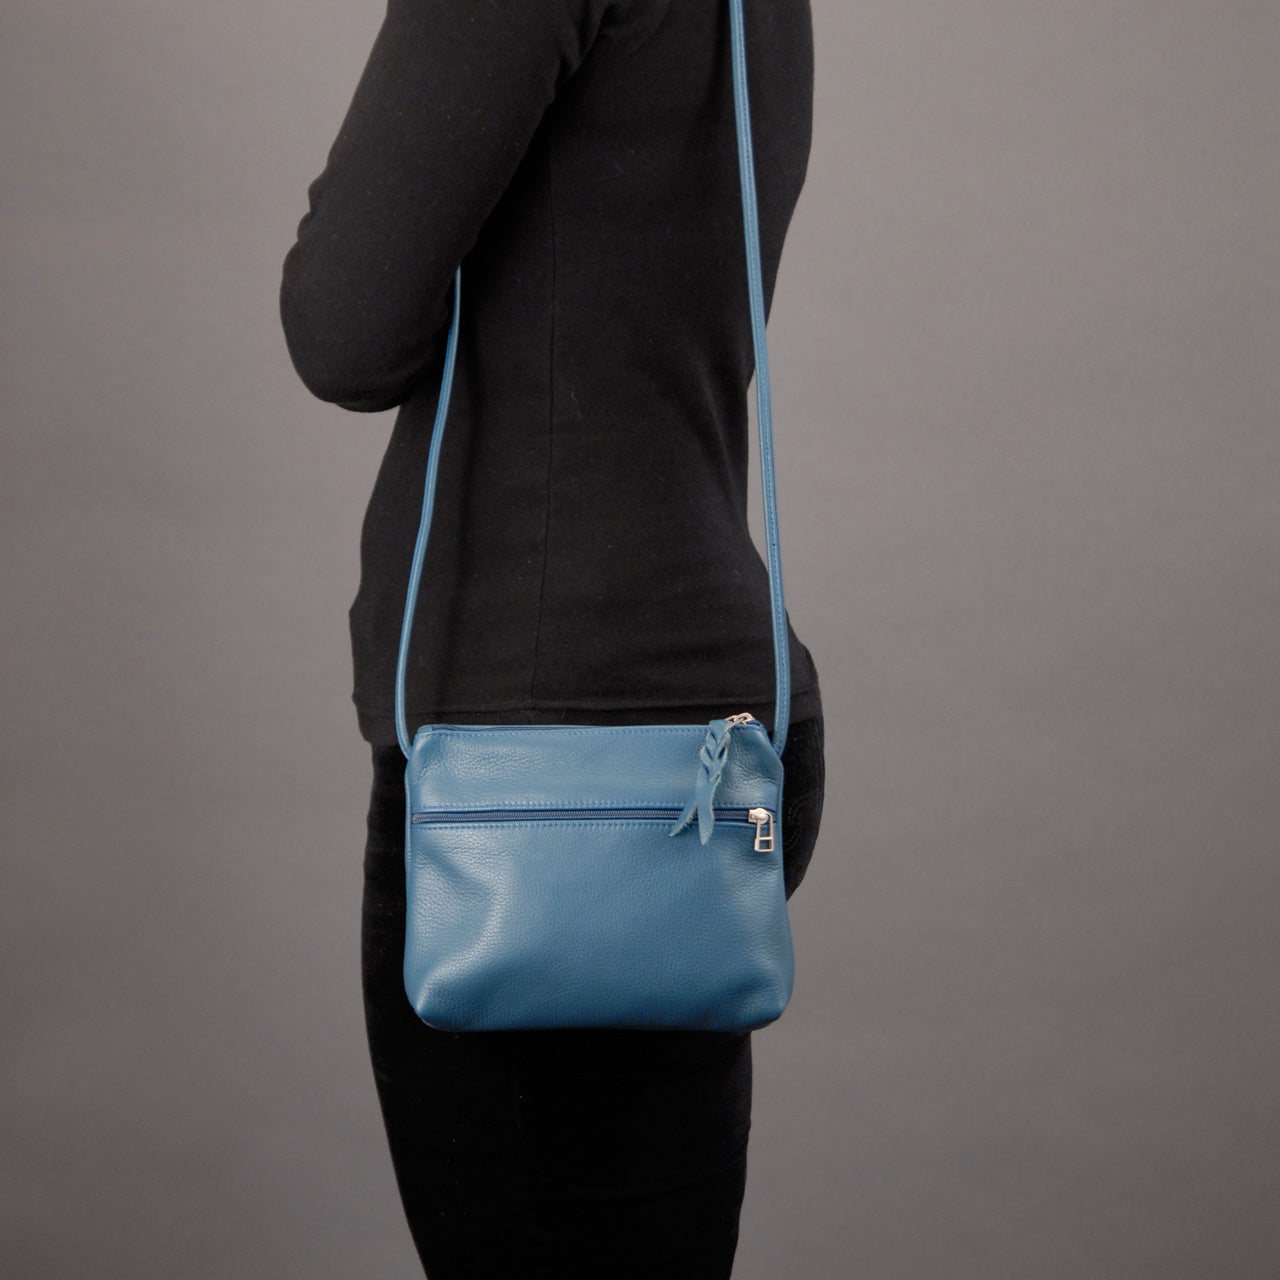 SVEN Style No. 007 Crossbody/Shoulder Bag teal leather